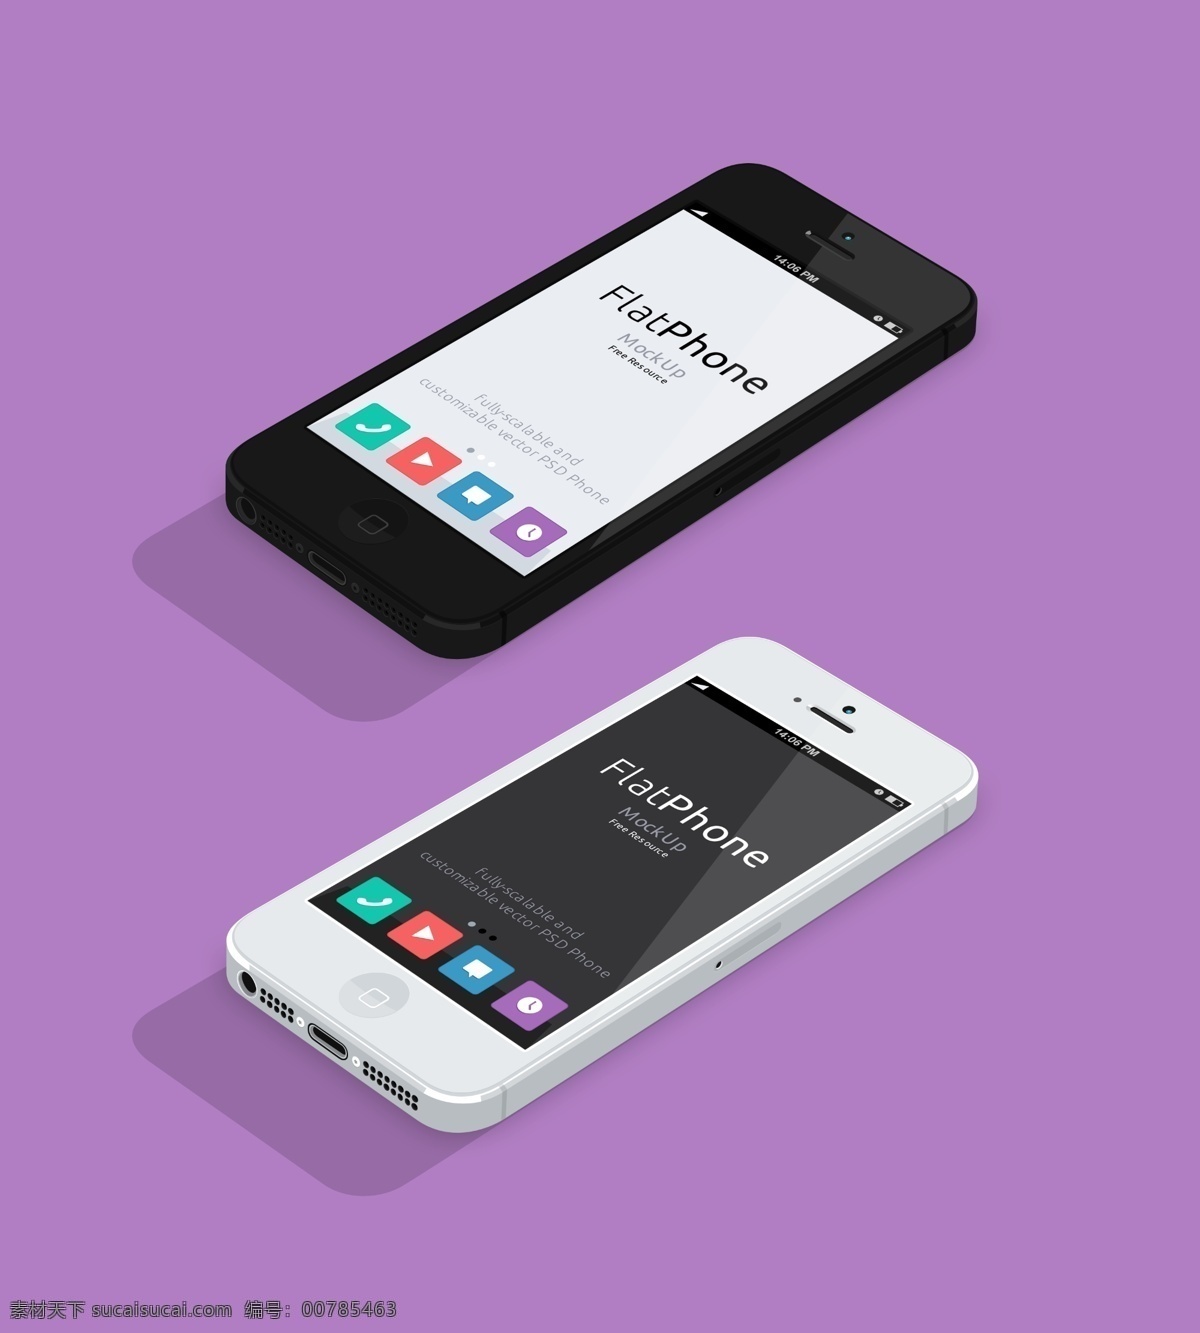 iphone5 扁平 模版 苹果 紫色背景 设备 图标设计 移动界面设计